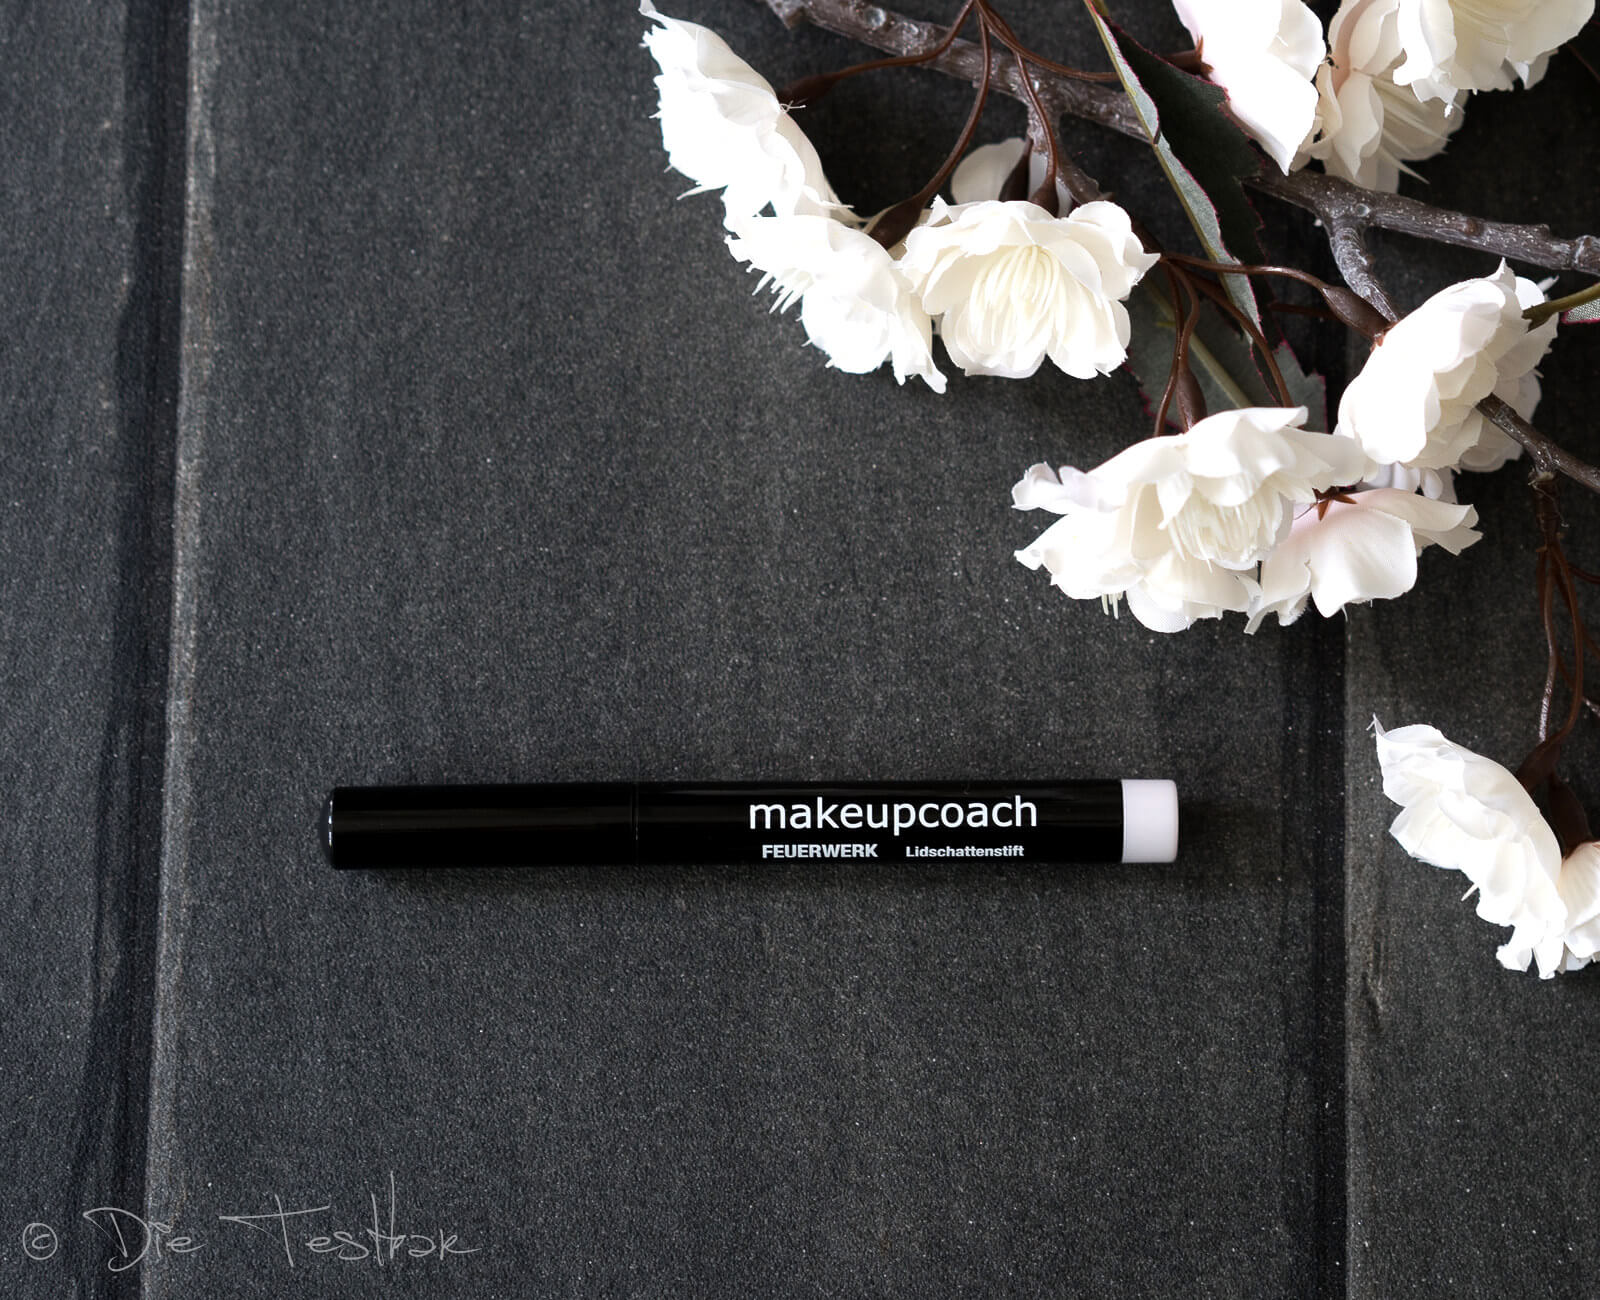 Für ein wunderschönes Augen- und Lippen-Make-up - Hochwertige Produkte von makeupcoach 65